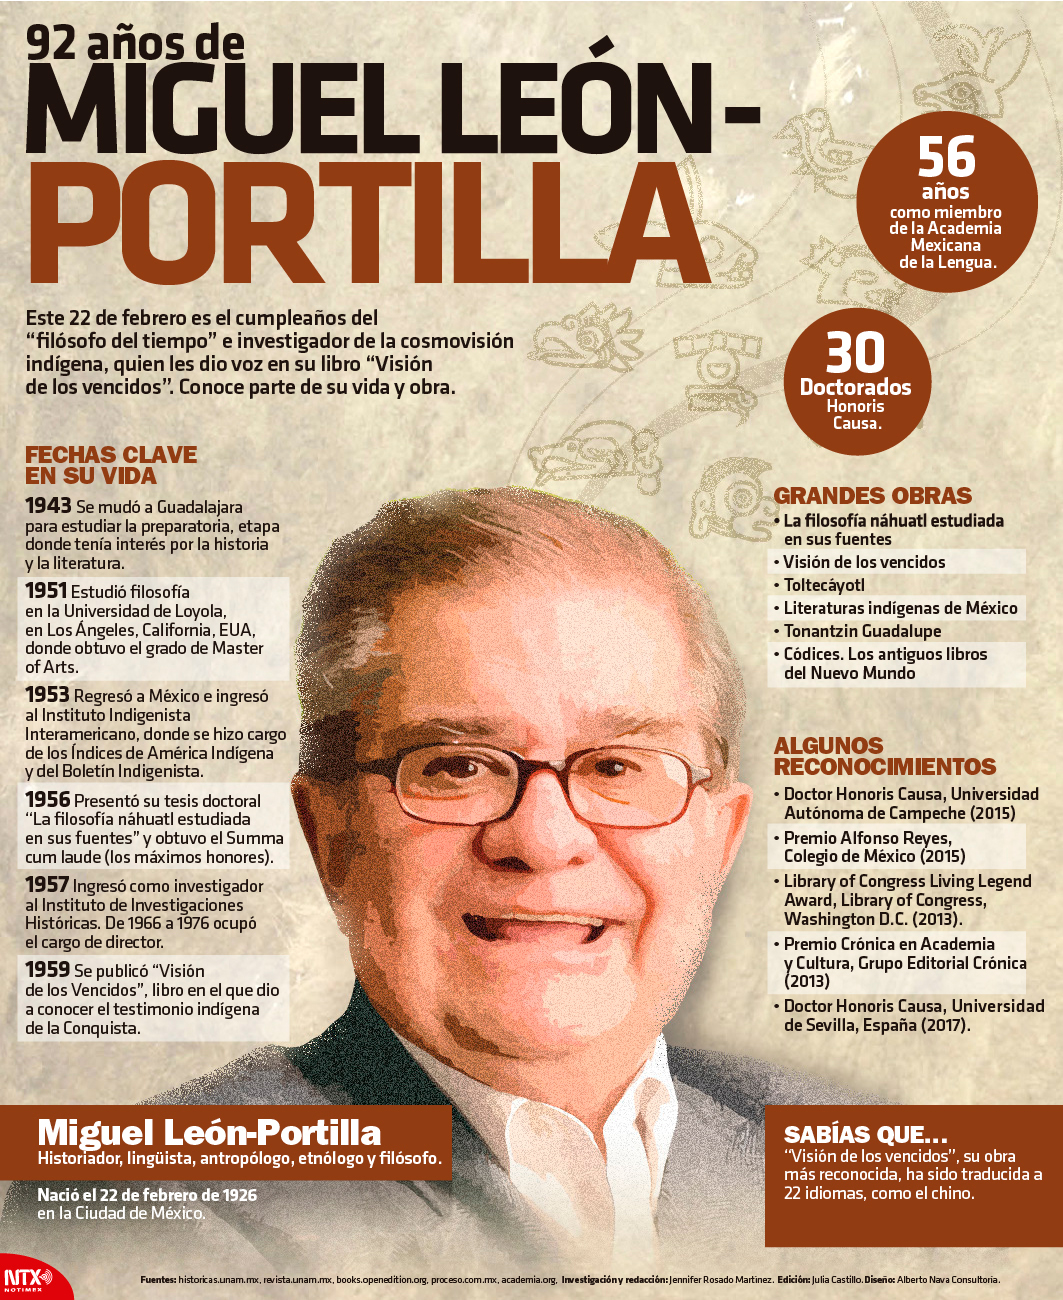 Miguel Len-Portilla